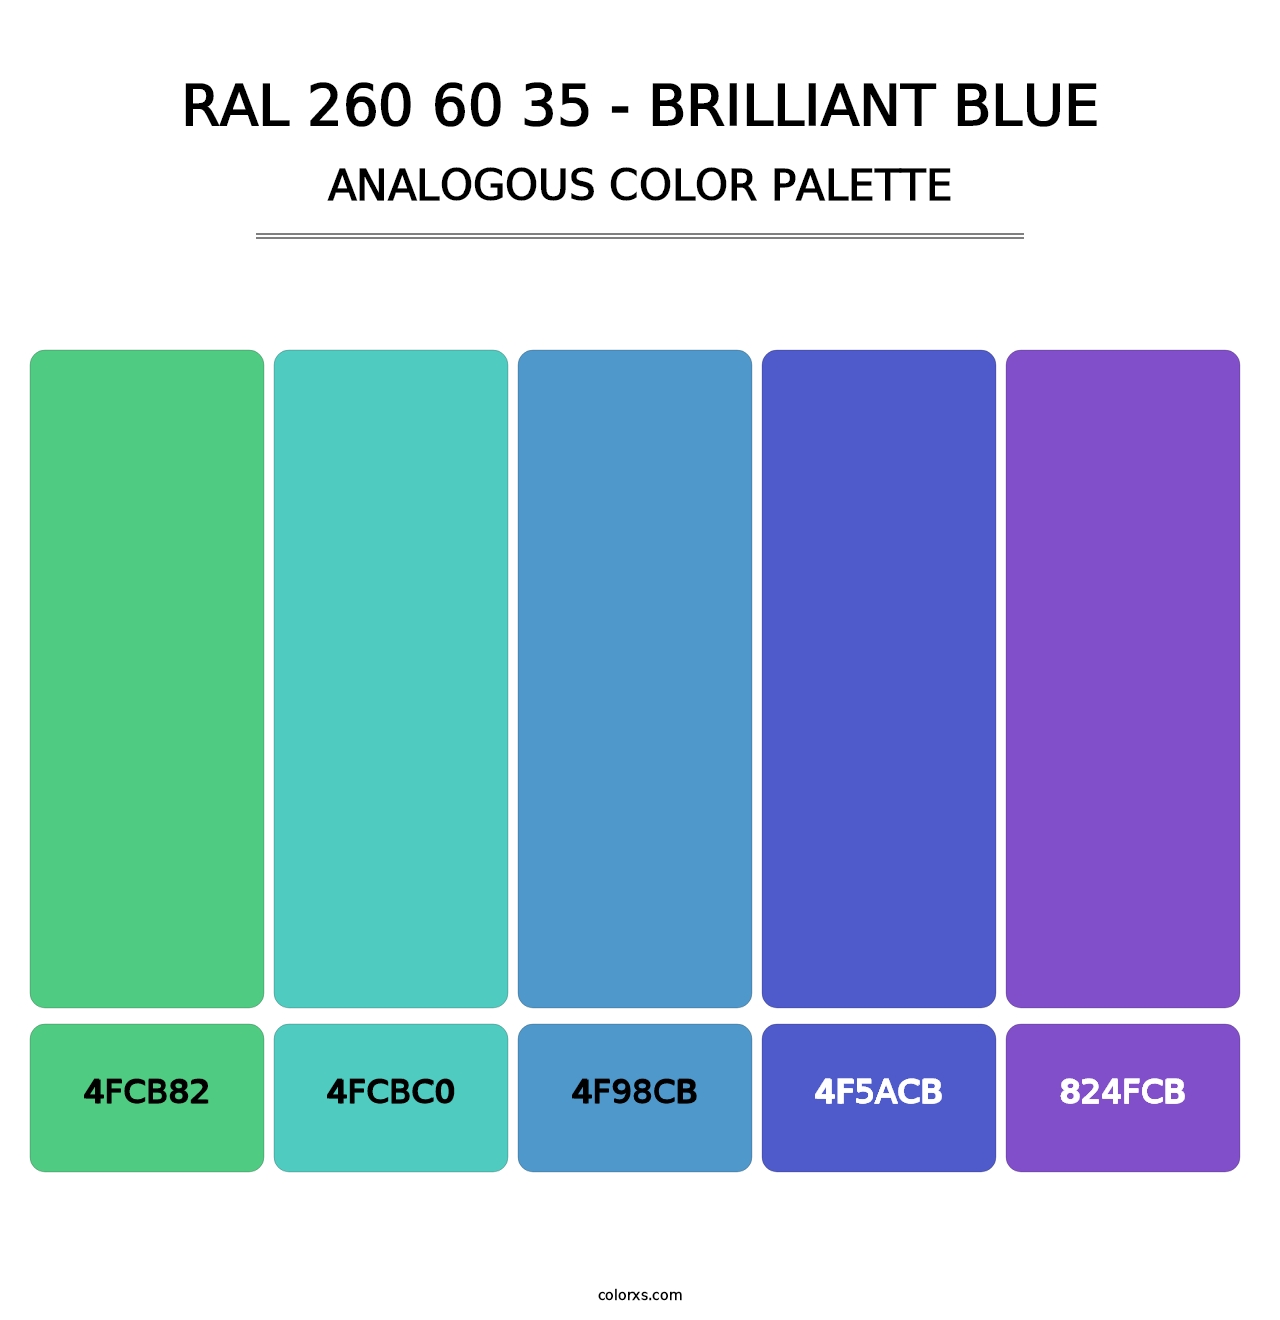 RAL 260 60 35 - Brilliant Blue - Analogous Color Palette